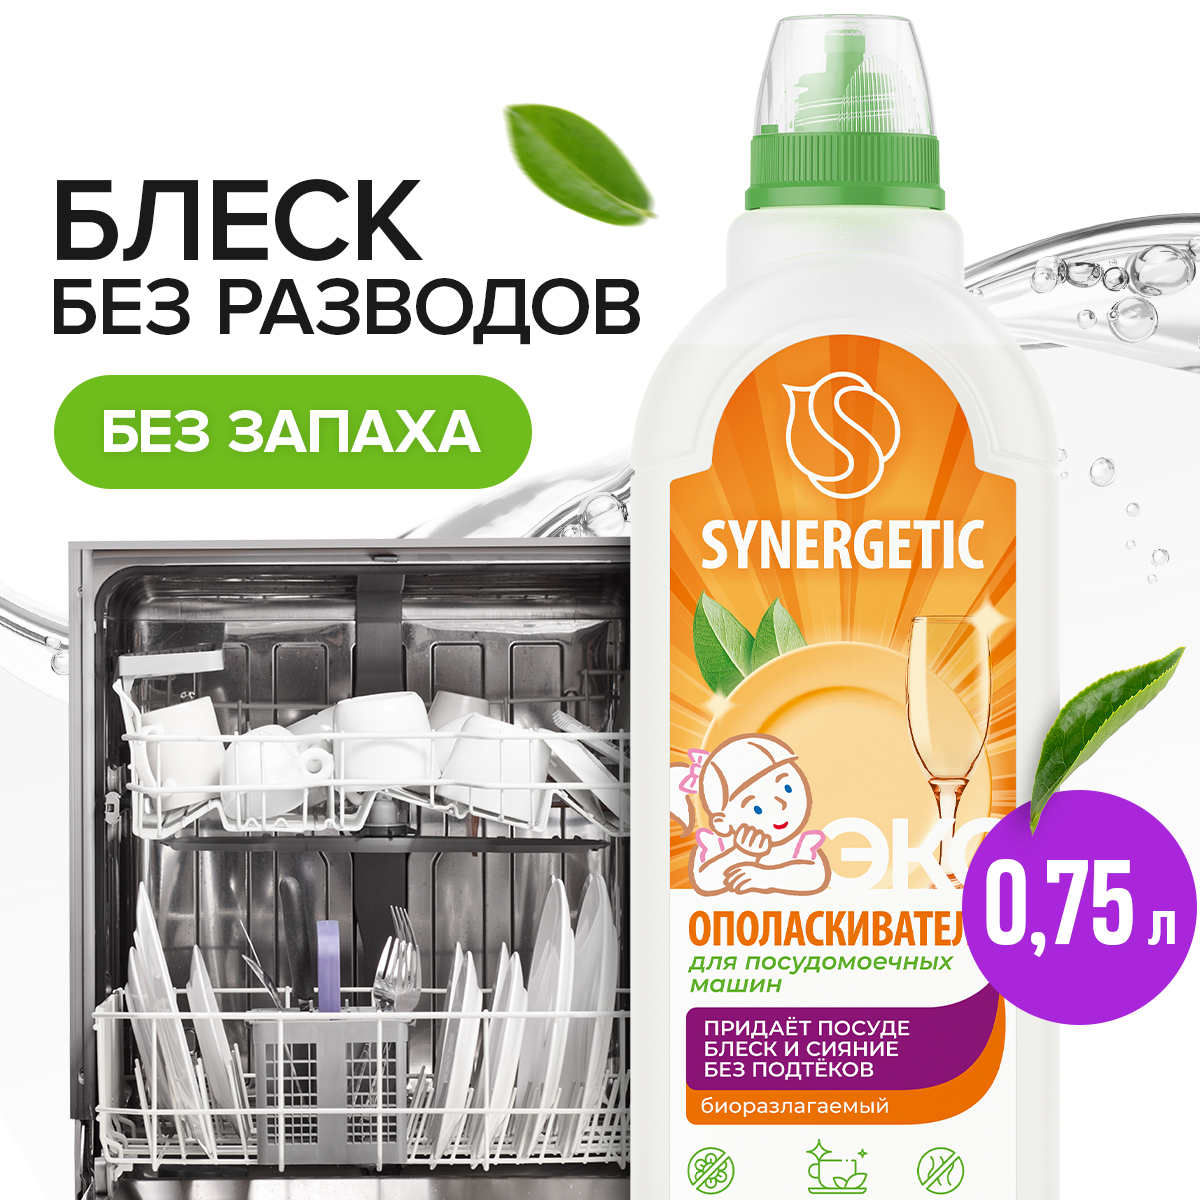 Ополаскиватель для посудомоечных машин SYNERGETIC, 0,75л - отзывы покупателей на маркетплейсе Мегамаркет | Артикул: 600001008179